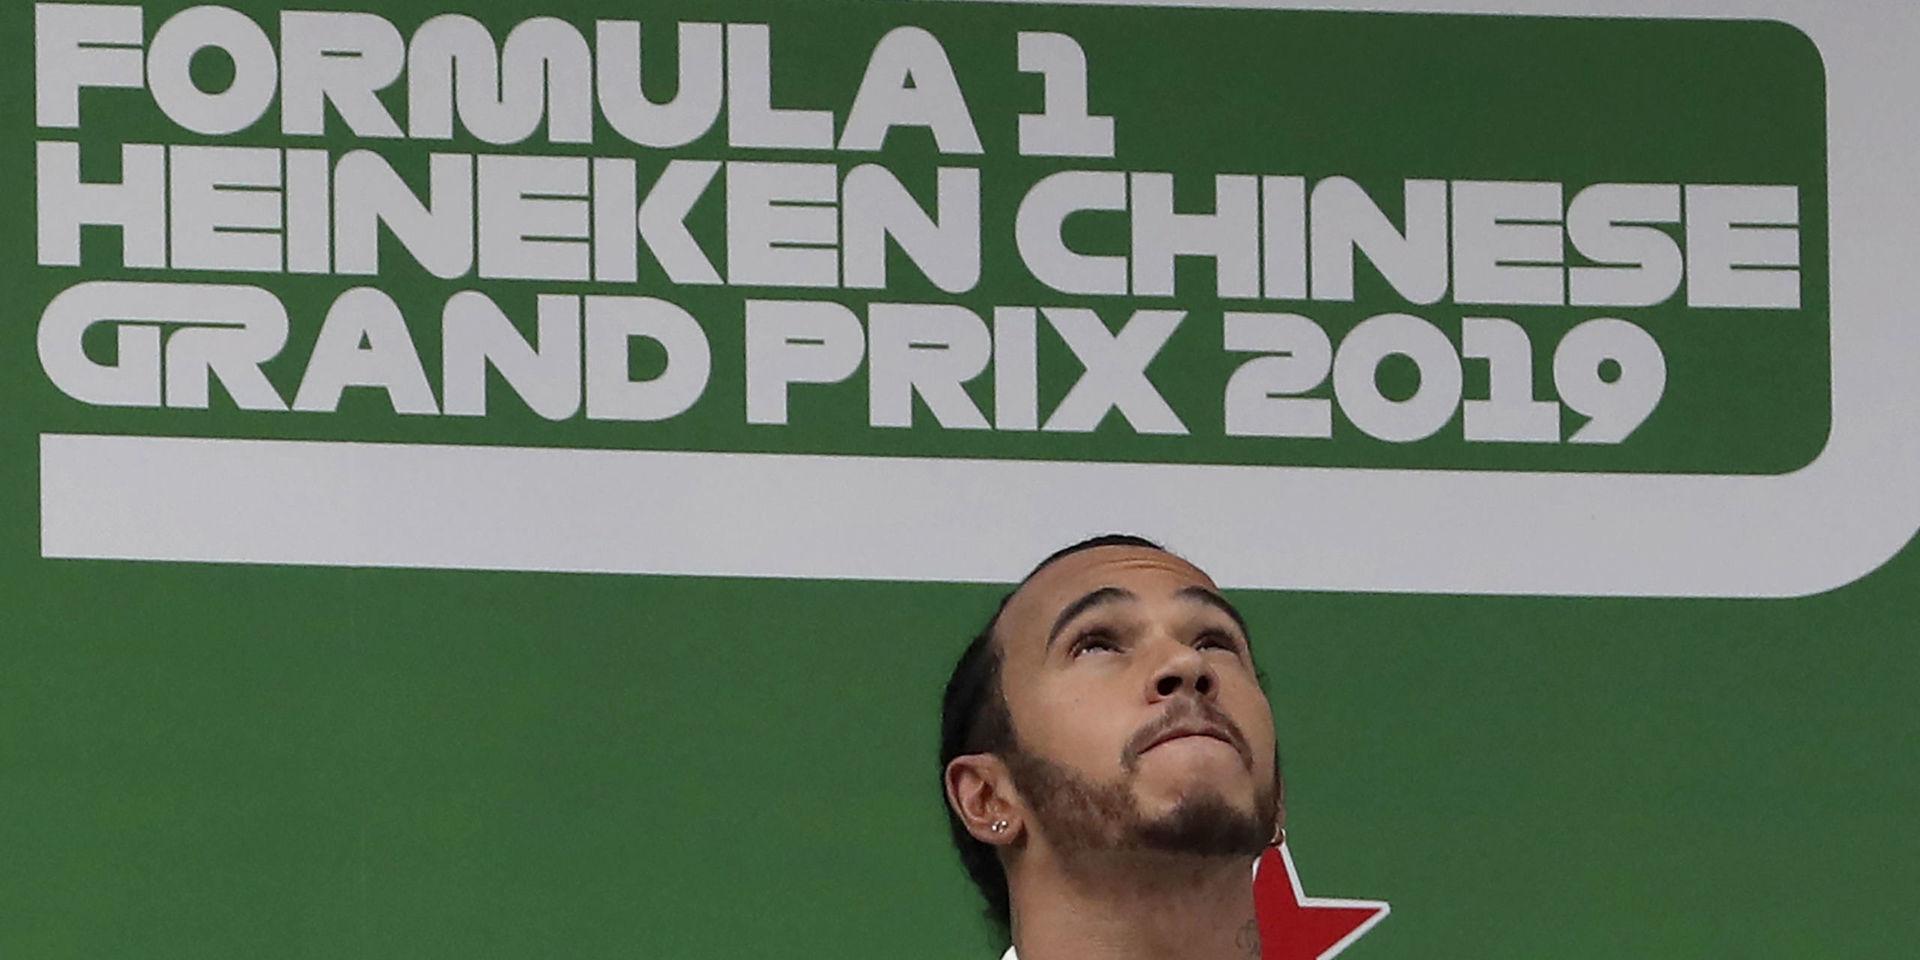 Mercedesföraren Lewis Hamilton vann Kinas Grand Prix i Shanghai i fjol. Men i år blir det ingen tävling. Oron för coronaviruset gör att den ser ut att ställas in. Arkivbild.